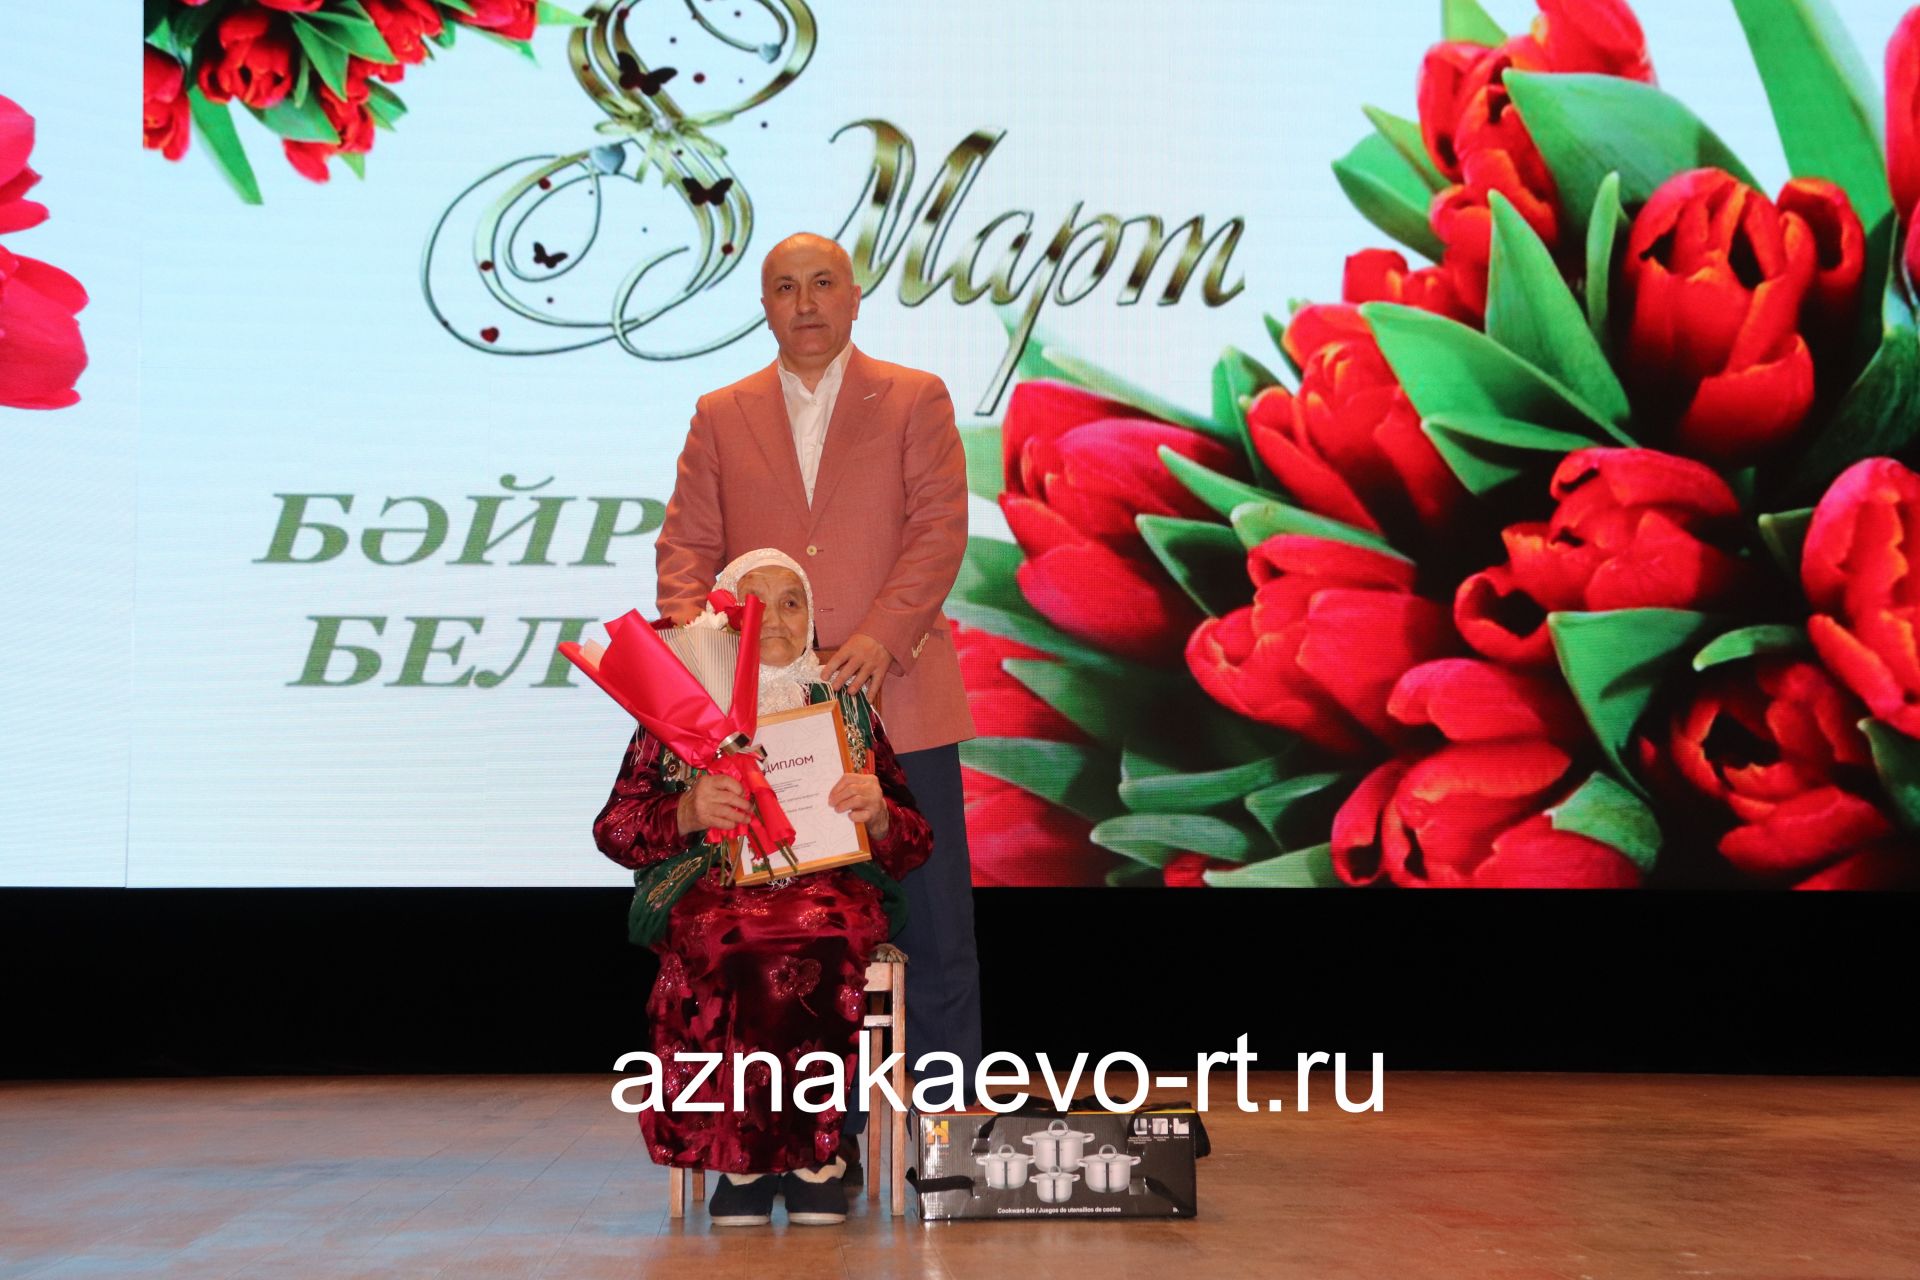 Представительниц прекрасной половины Азнакаево поздравили с праздником